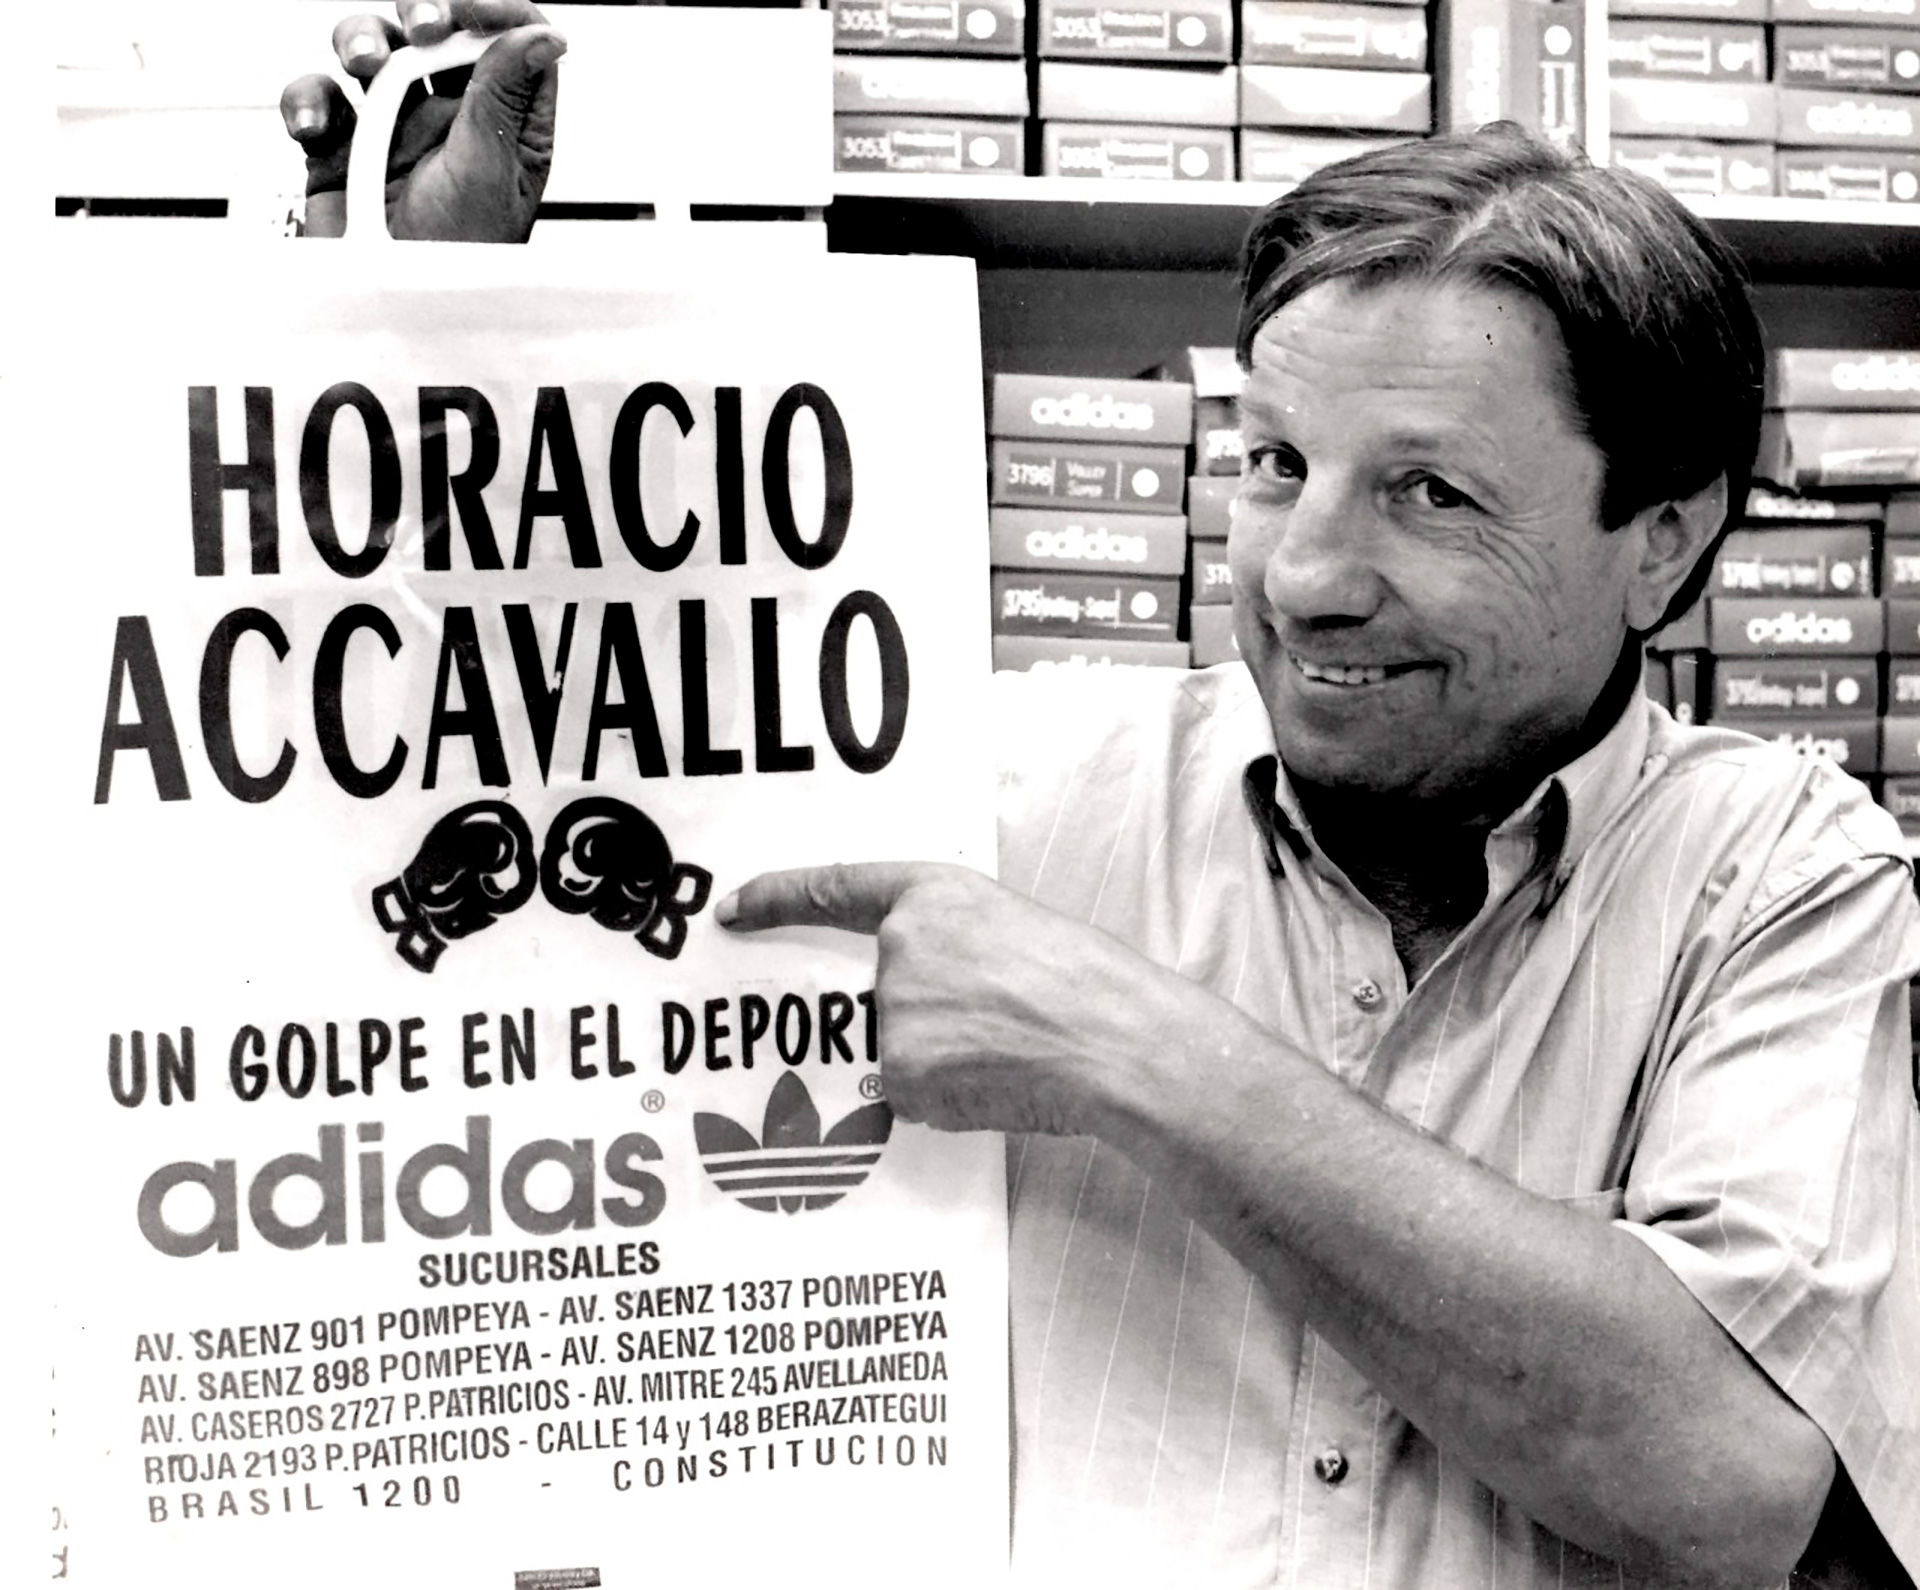 DespuÃ©s de retirarse del boxeo, Horacio puso varias tiendas deportivas con su nomobre (Gentileza familia Accavallo)